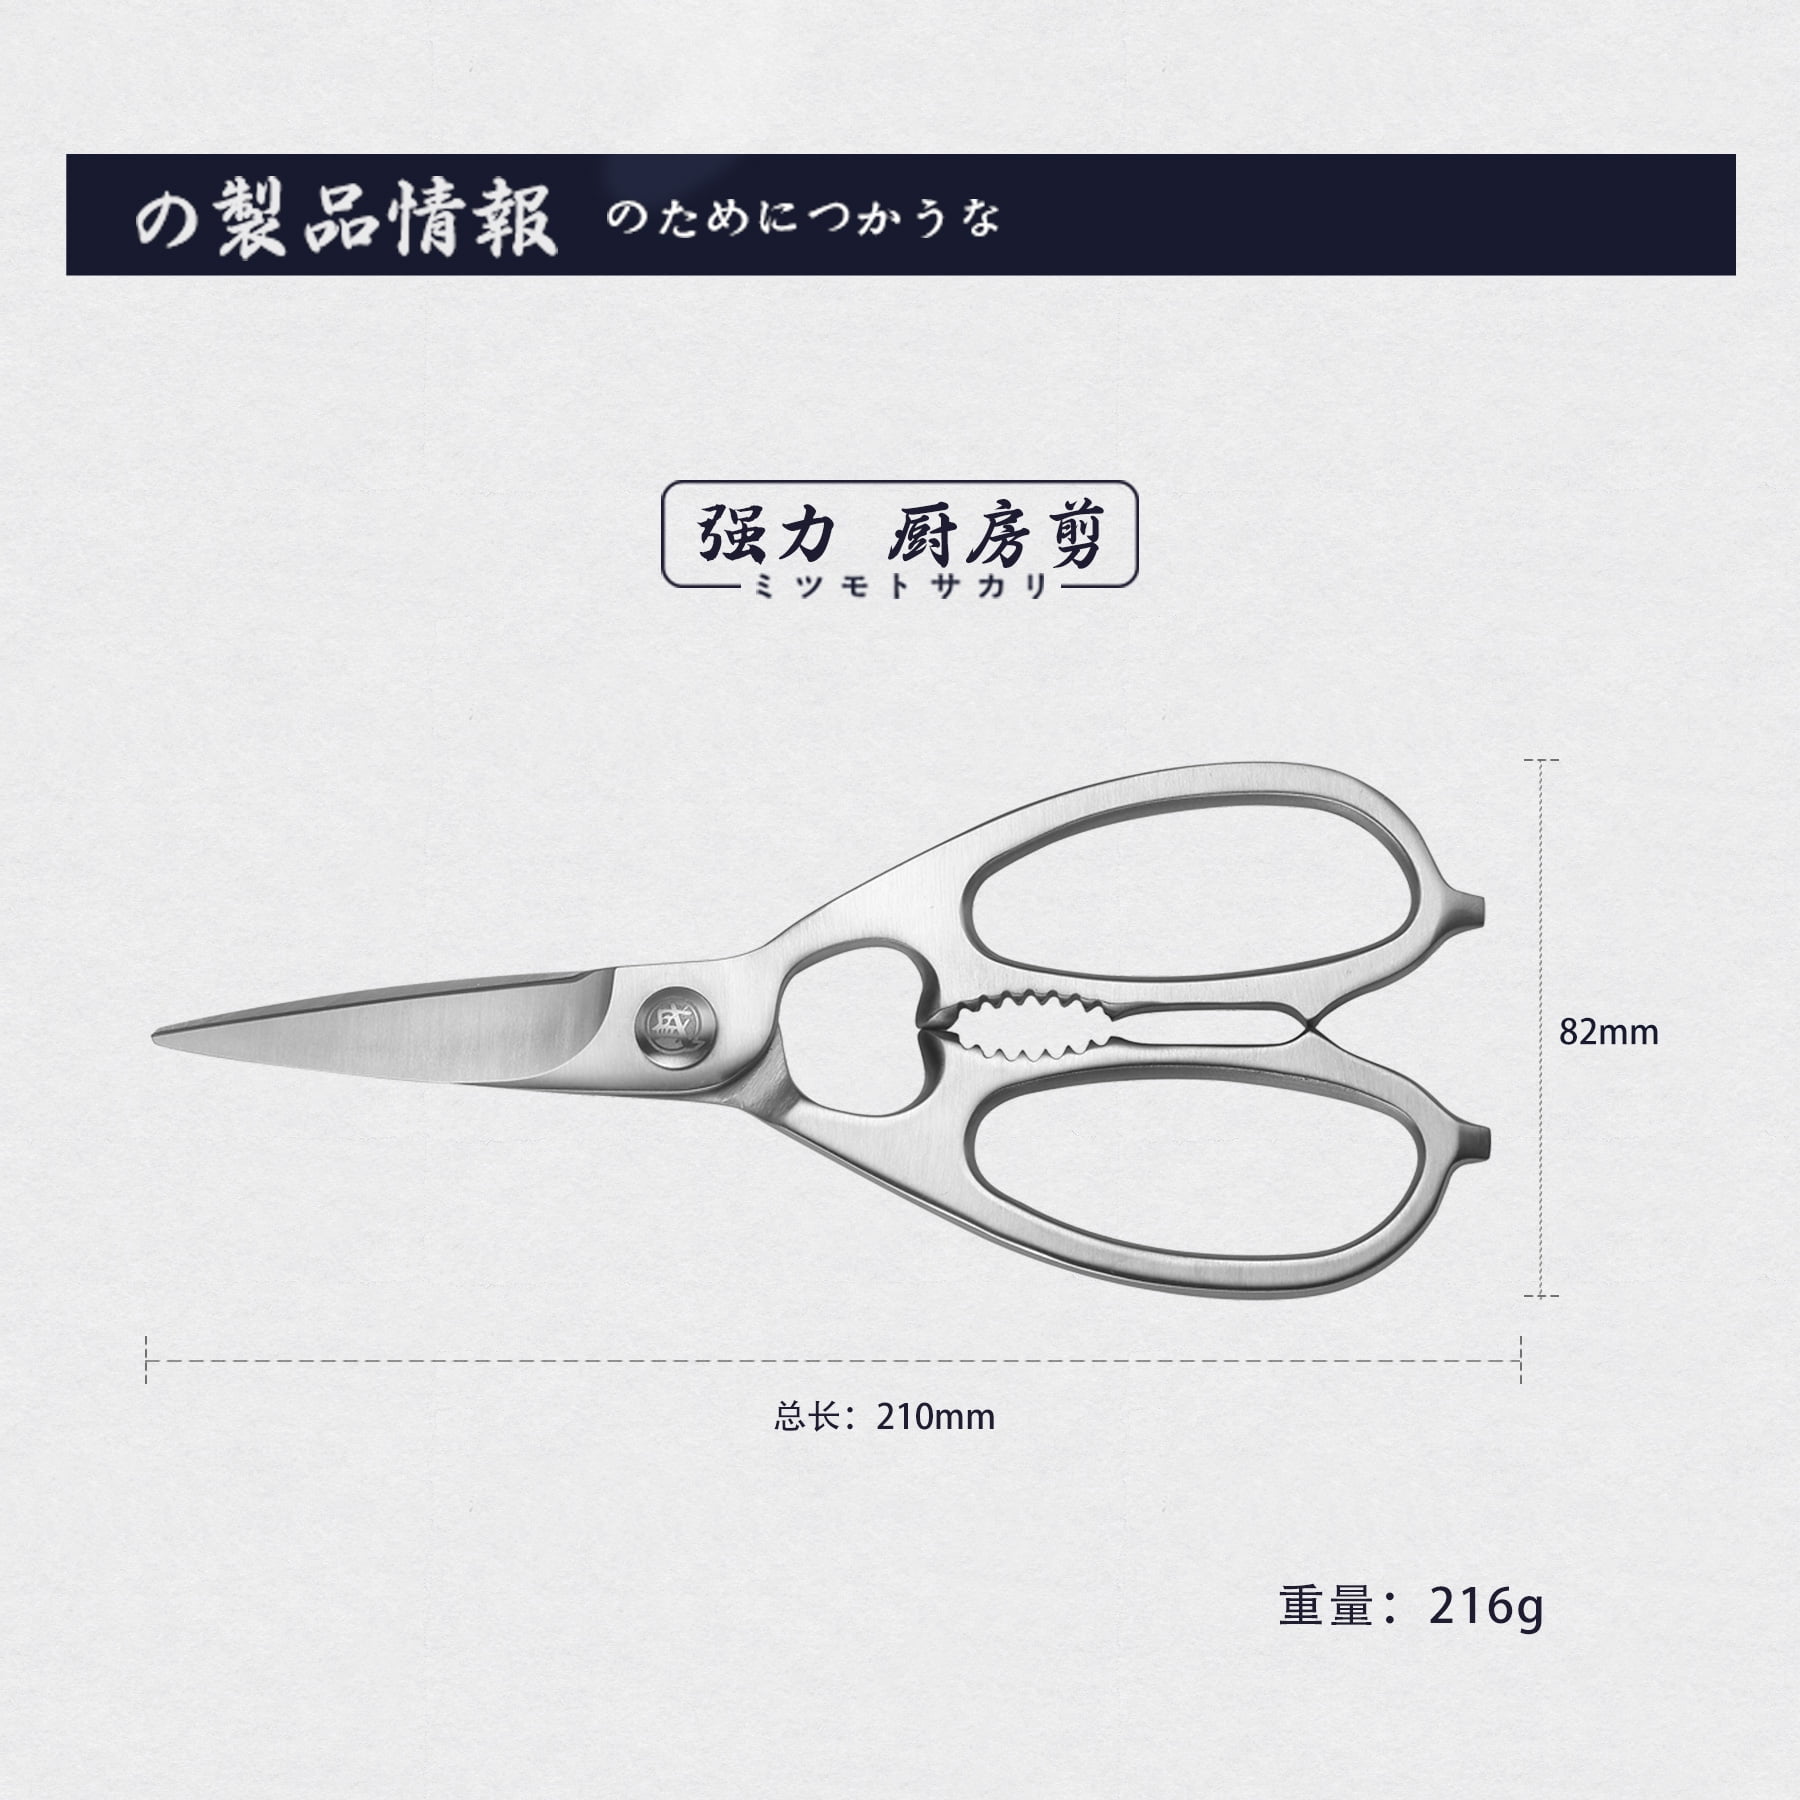 Kikusumi HASAMI Kitchen Scissors Japanese Kitchen Shears / Herb